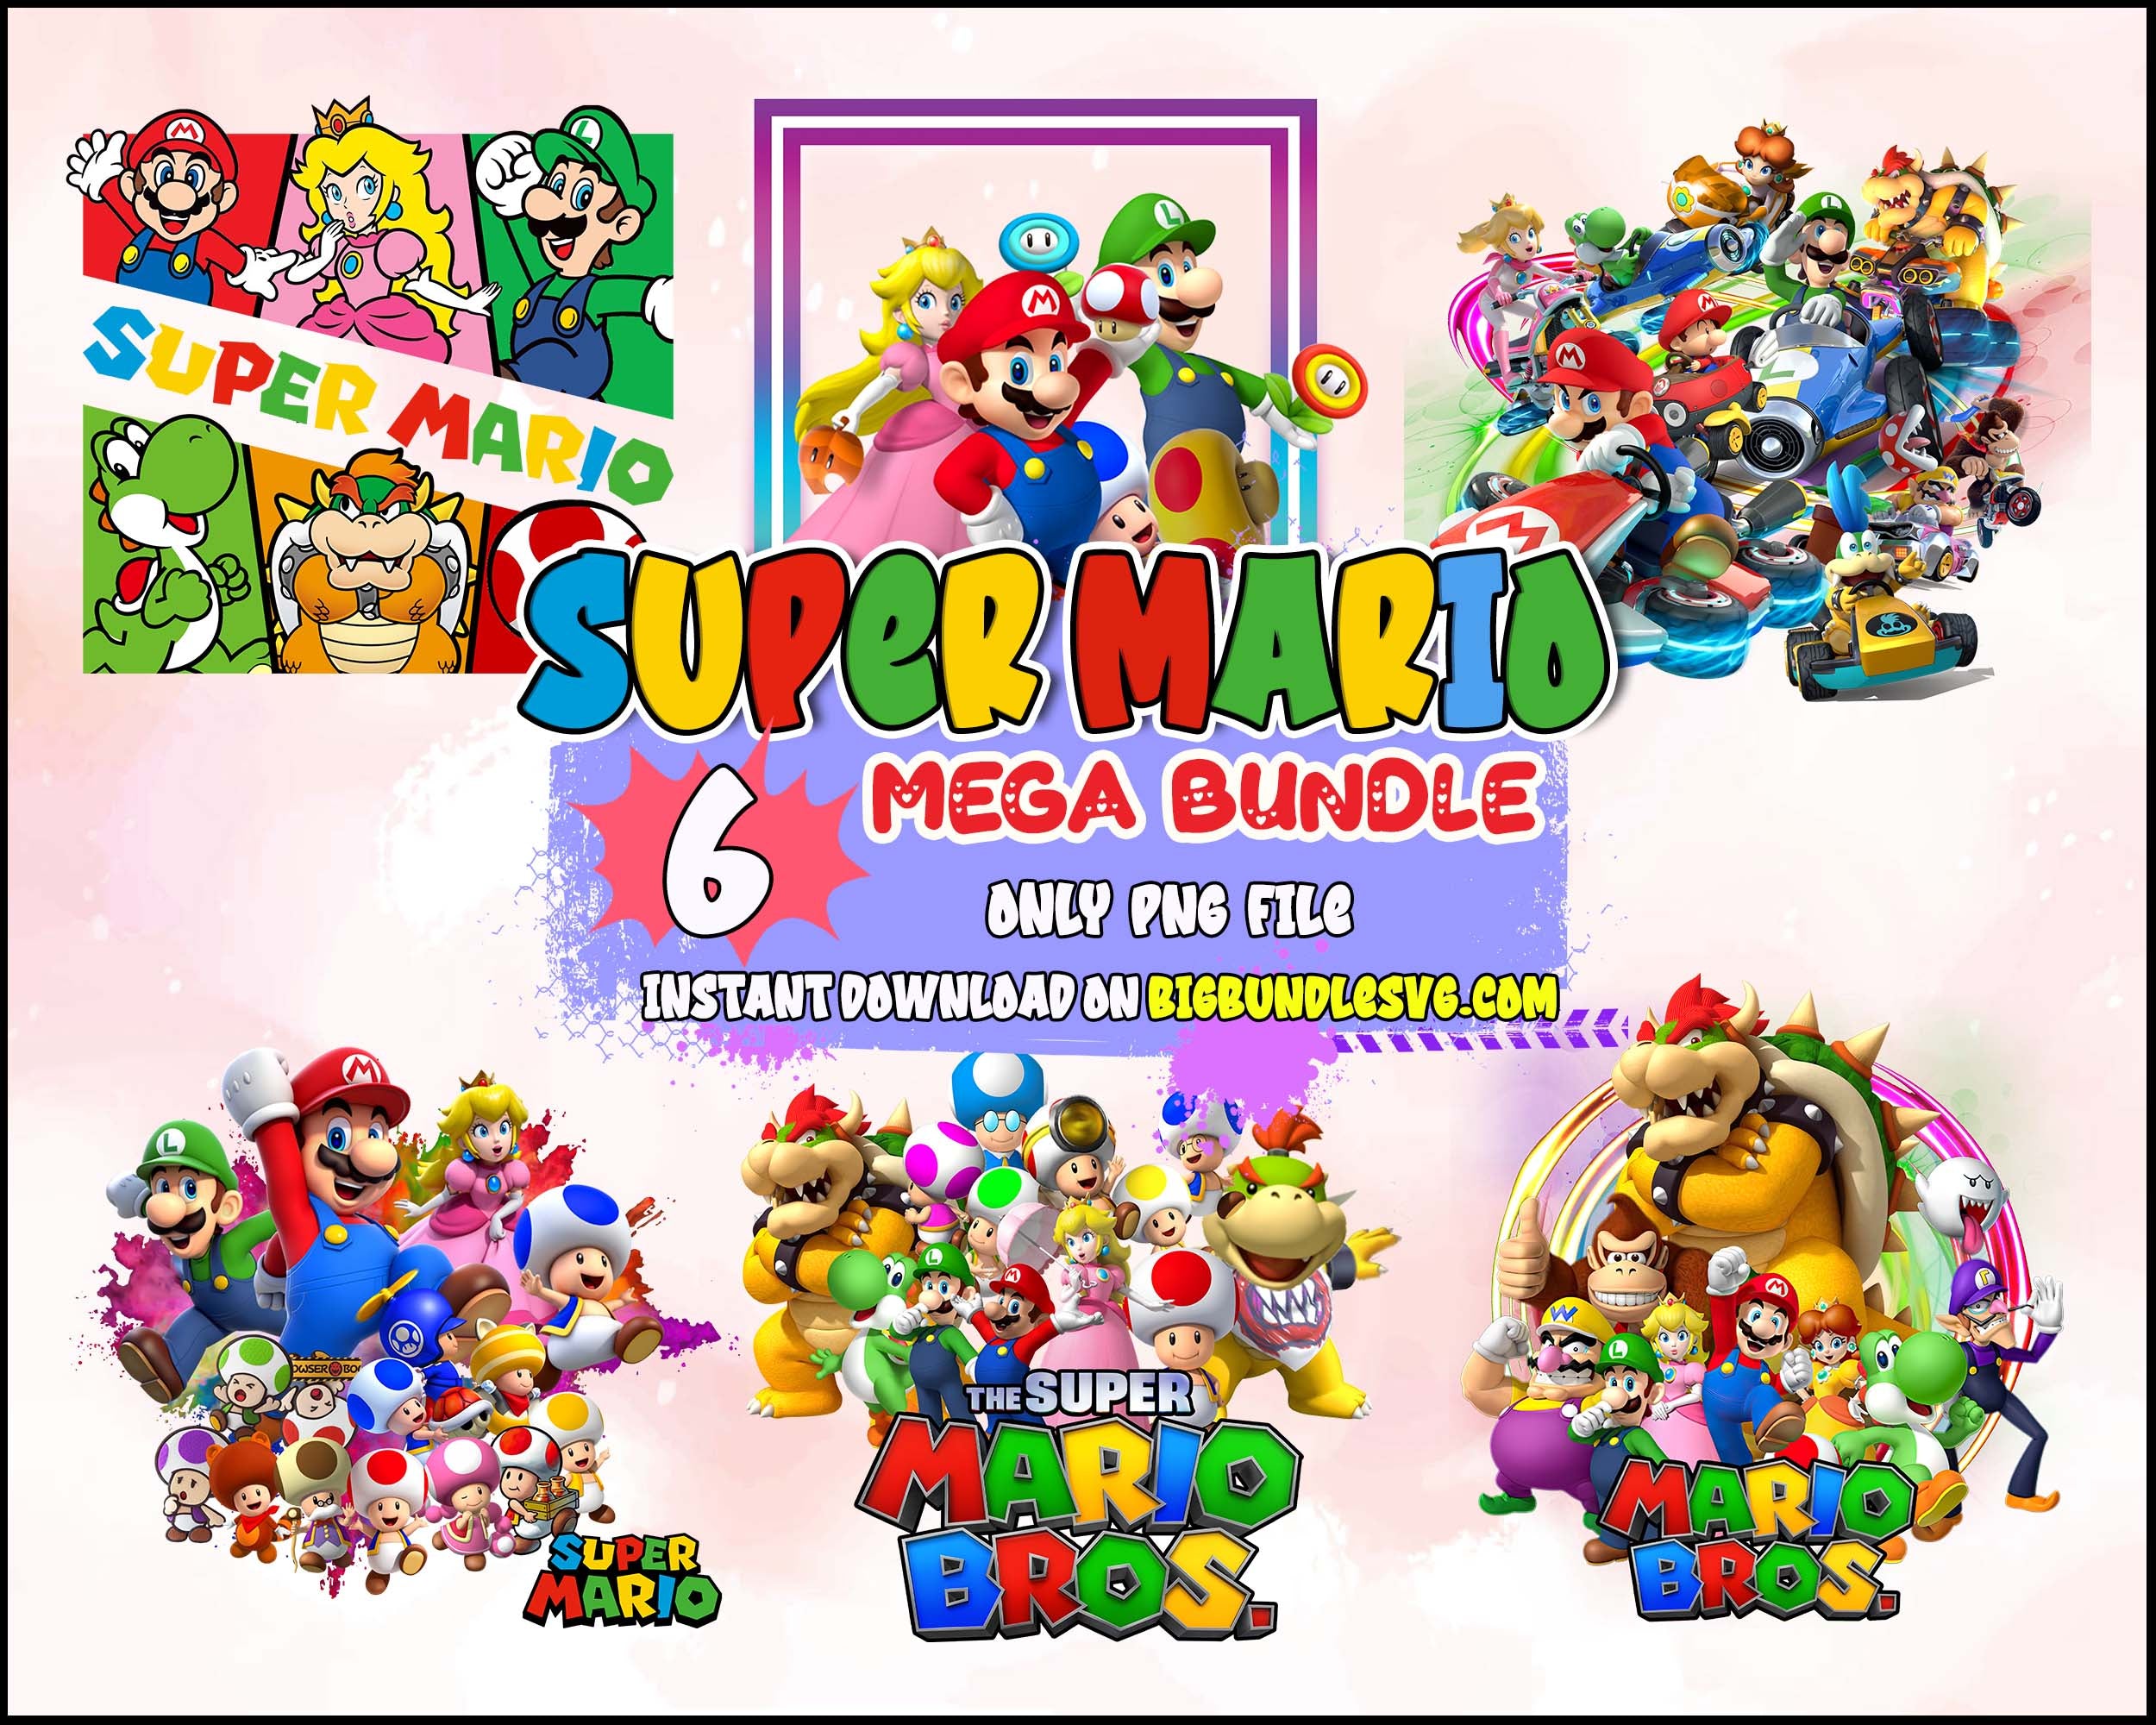 Super Mario SVG Bundle, 200+Designs Game SVG PNG EPS DXF PDF Digital  Download LF6LYB2F - Package SVG